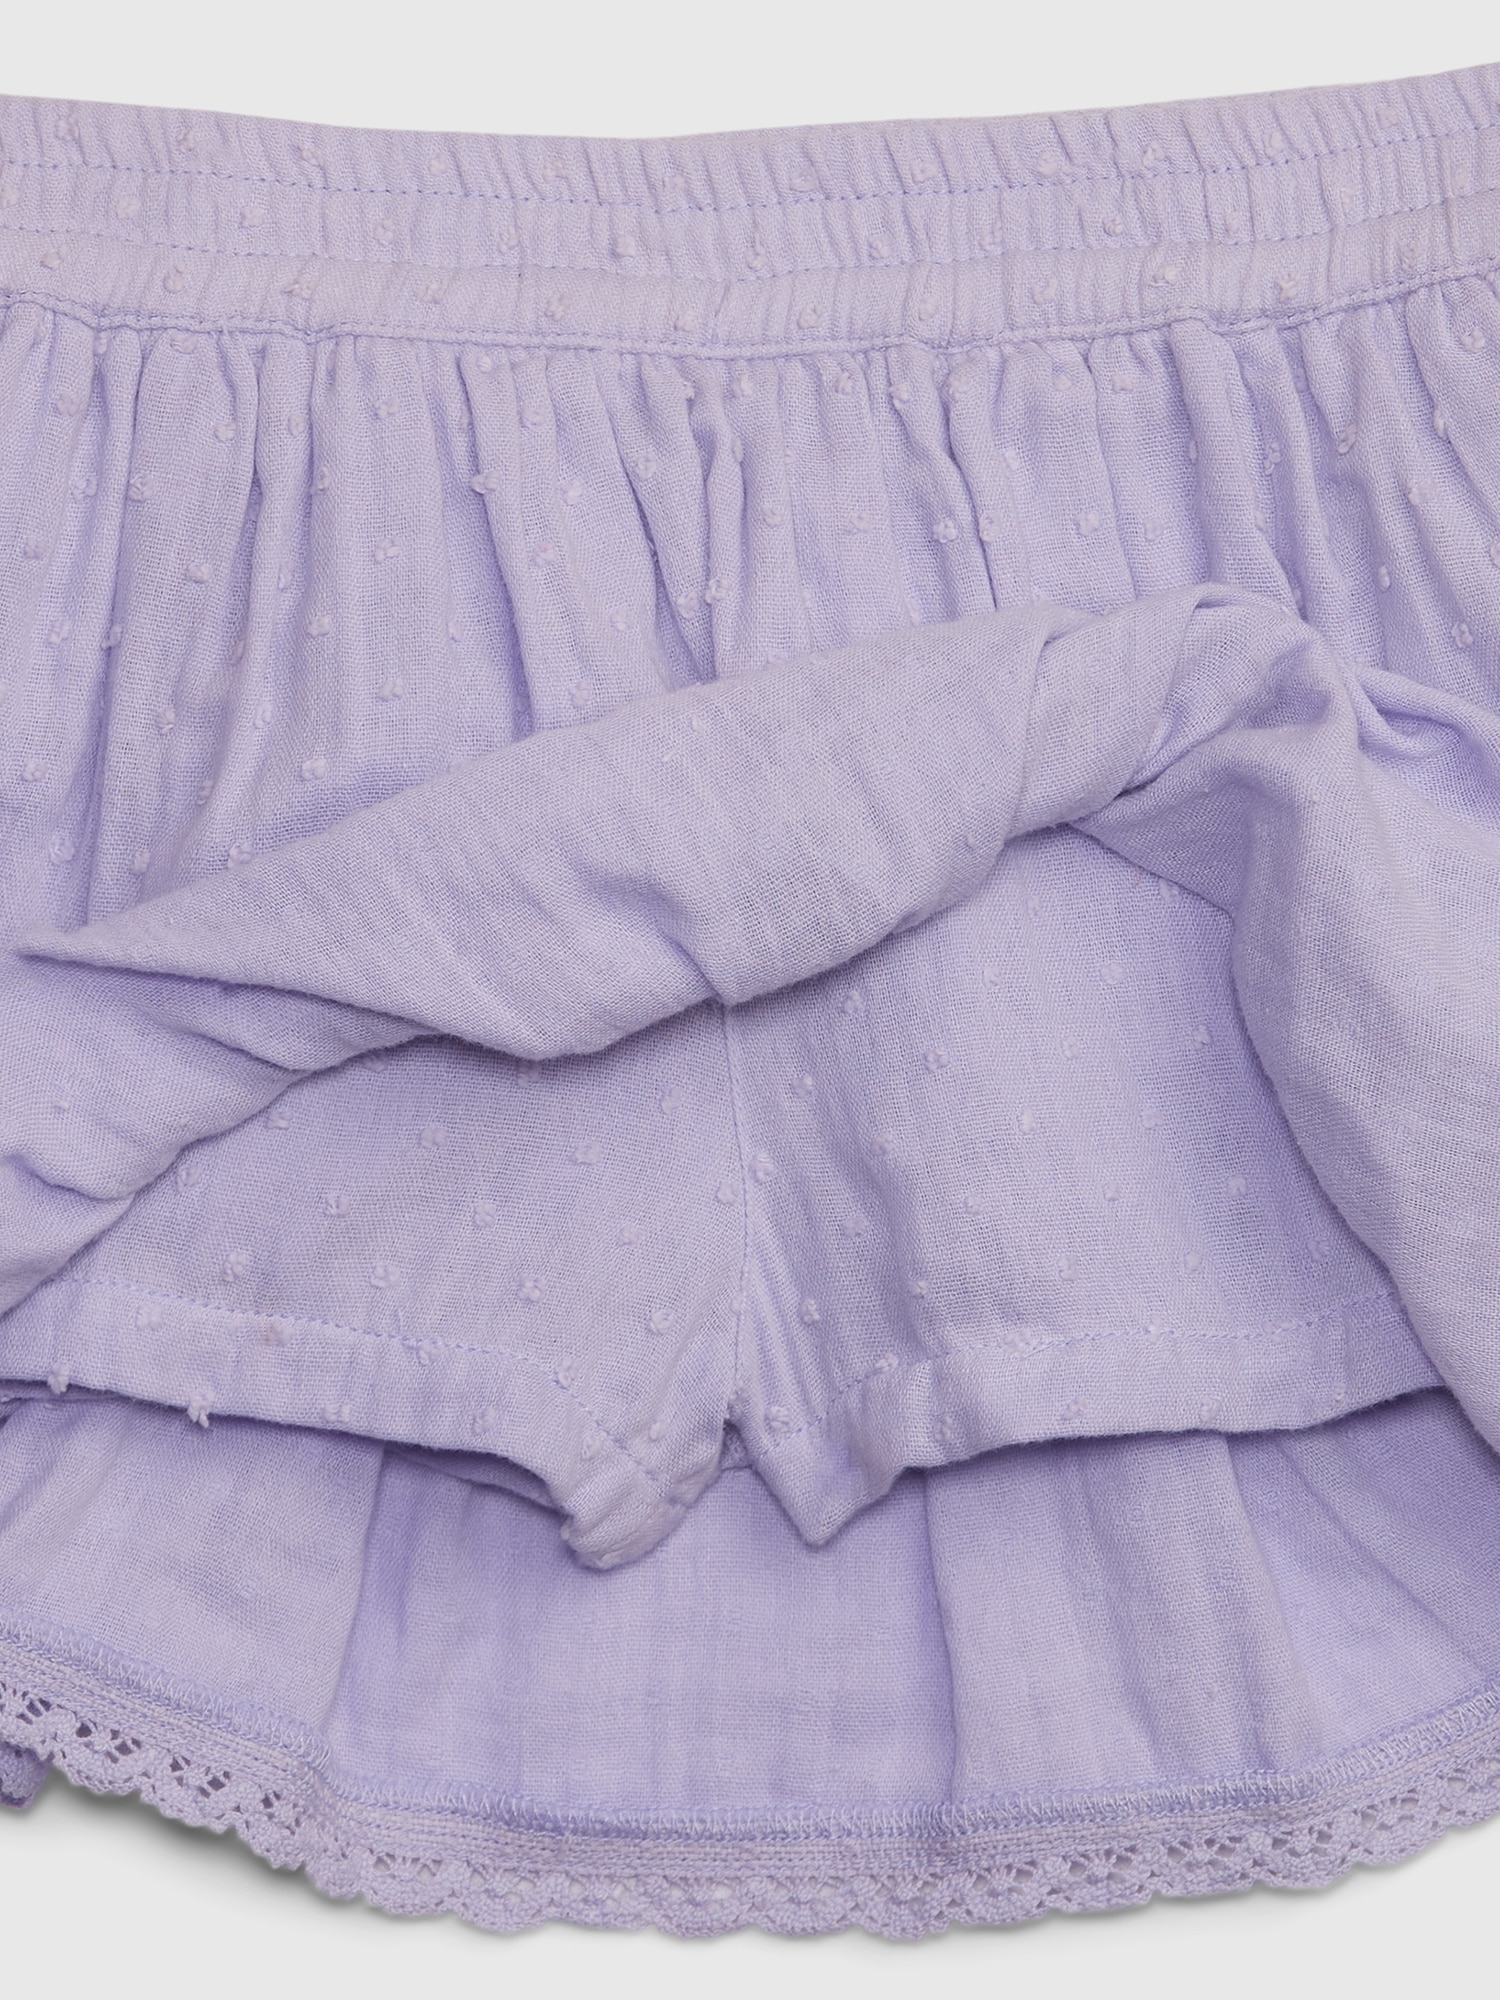 Toddler Swiss Dot Tiered Skirt | Gap